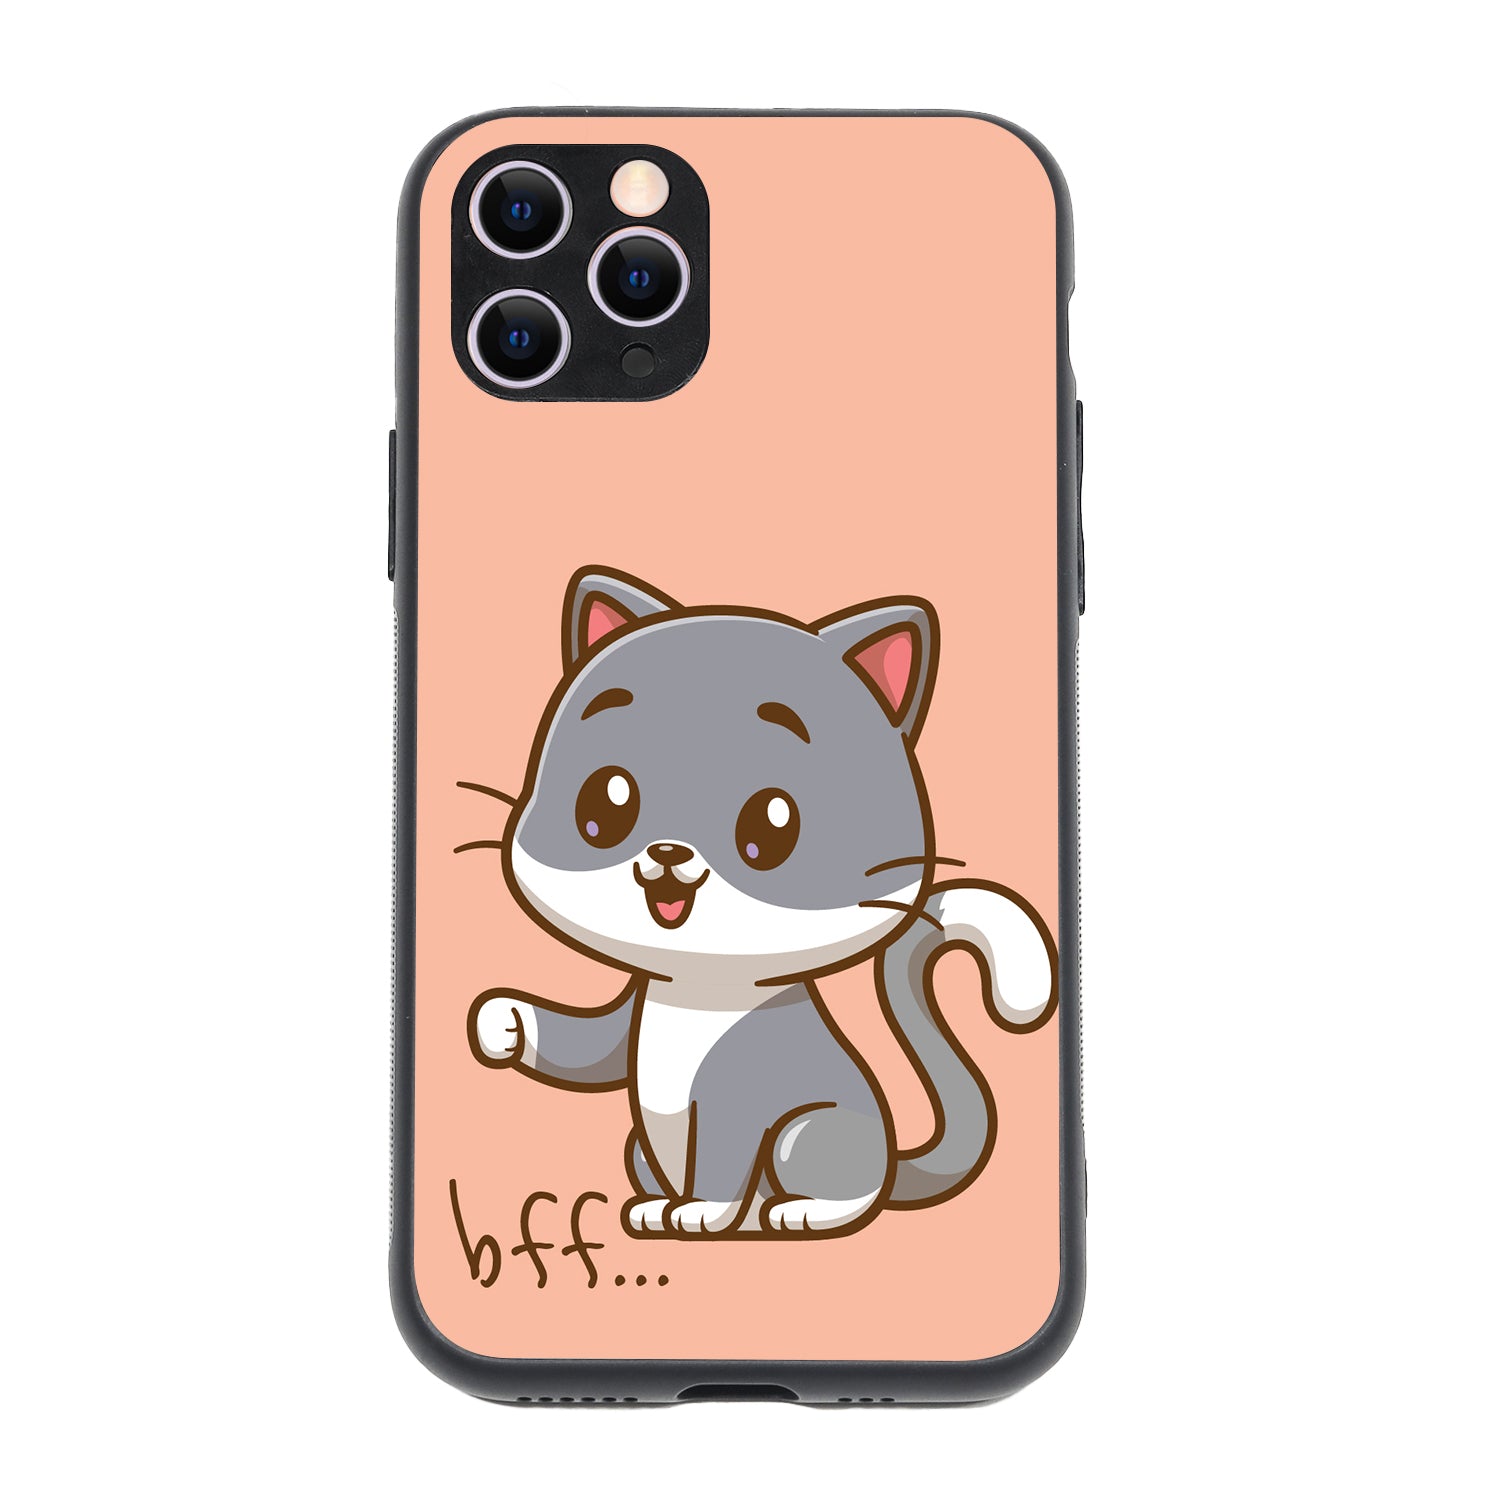 Best Friend Cat Bff iPhone 11 Pro Case